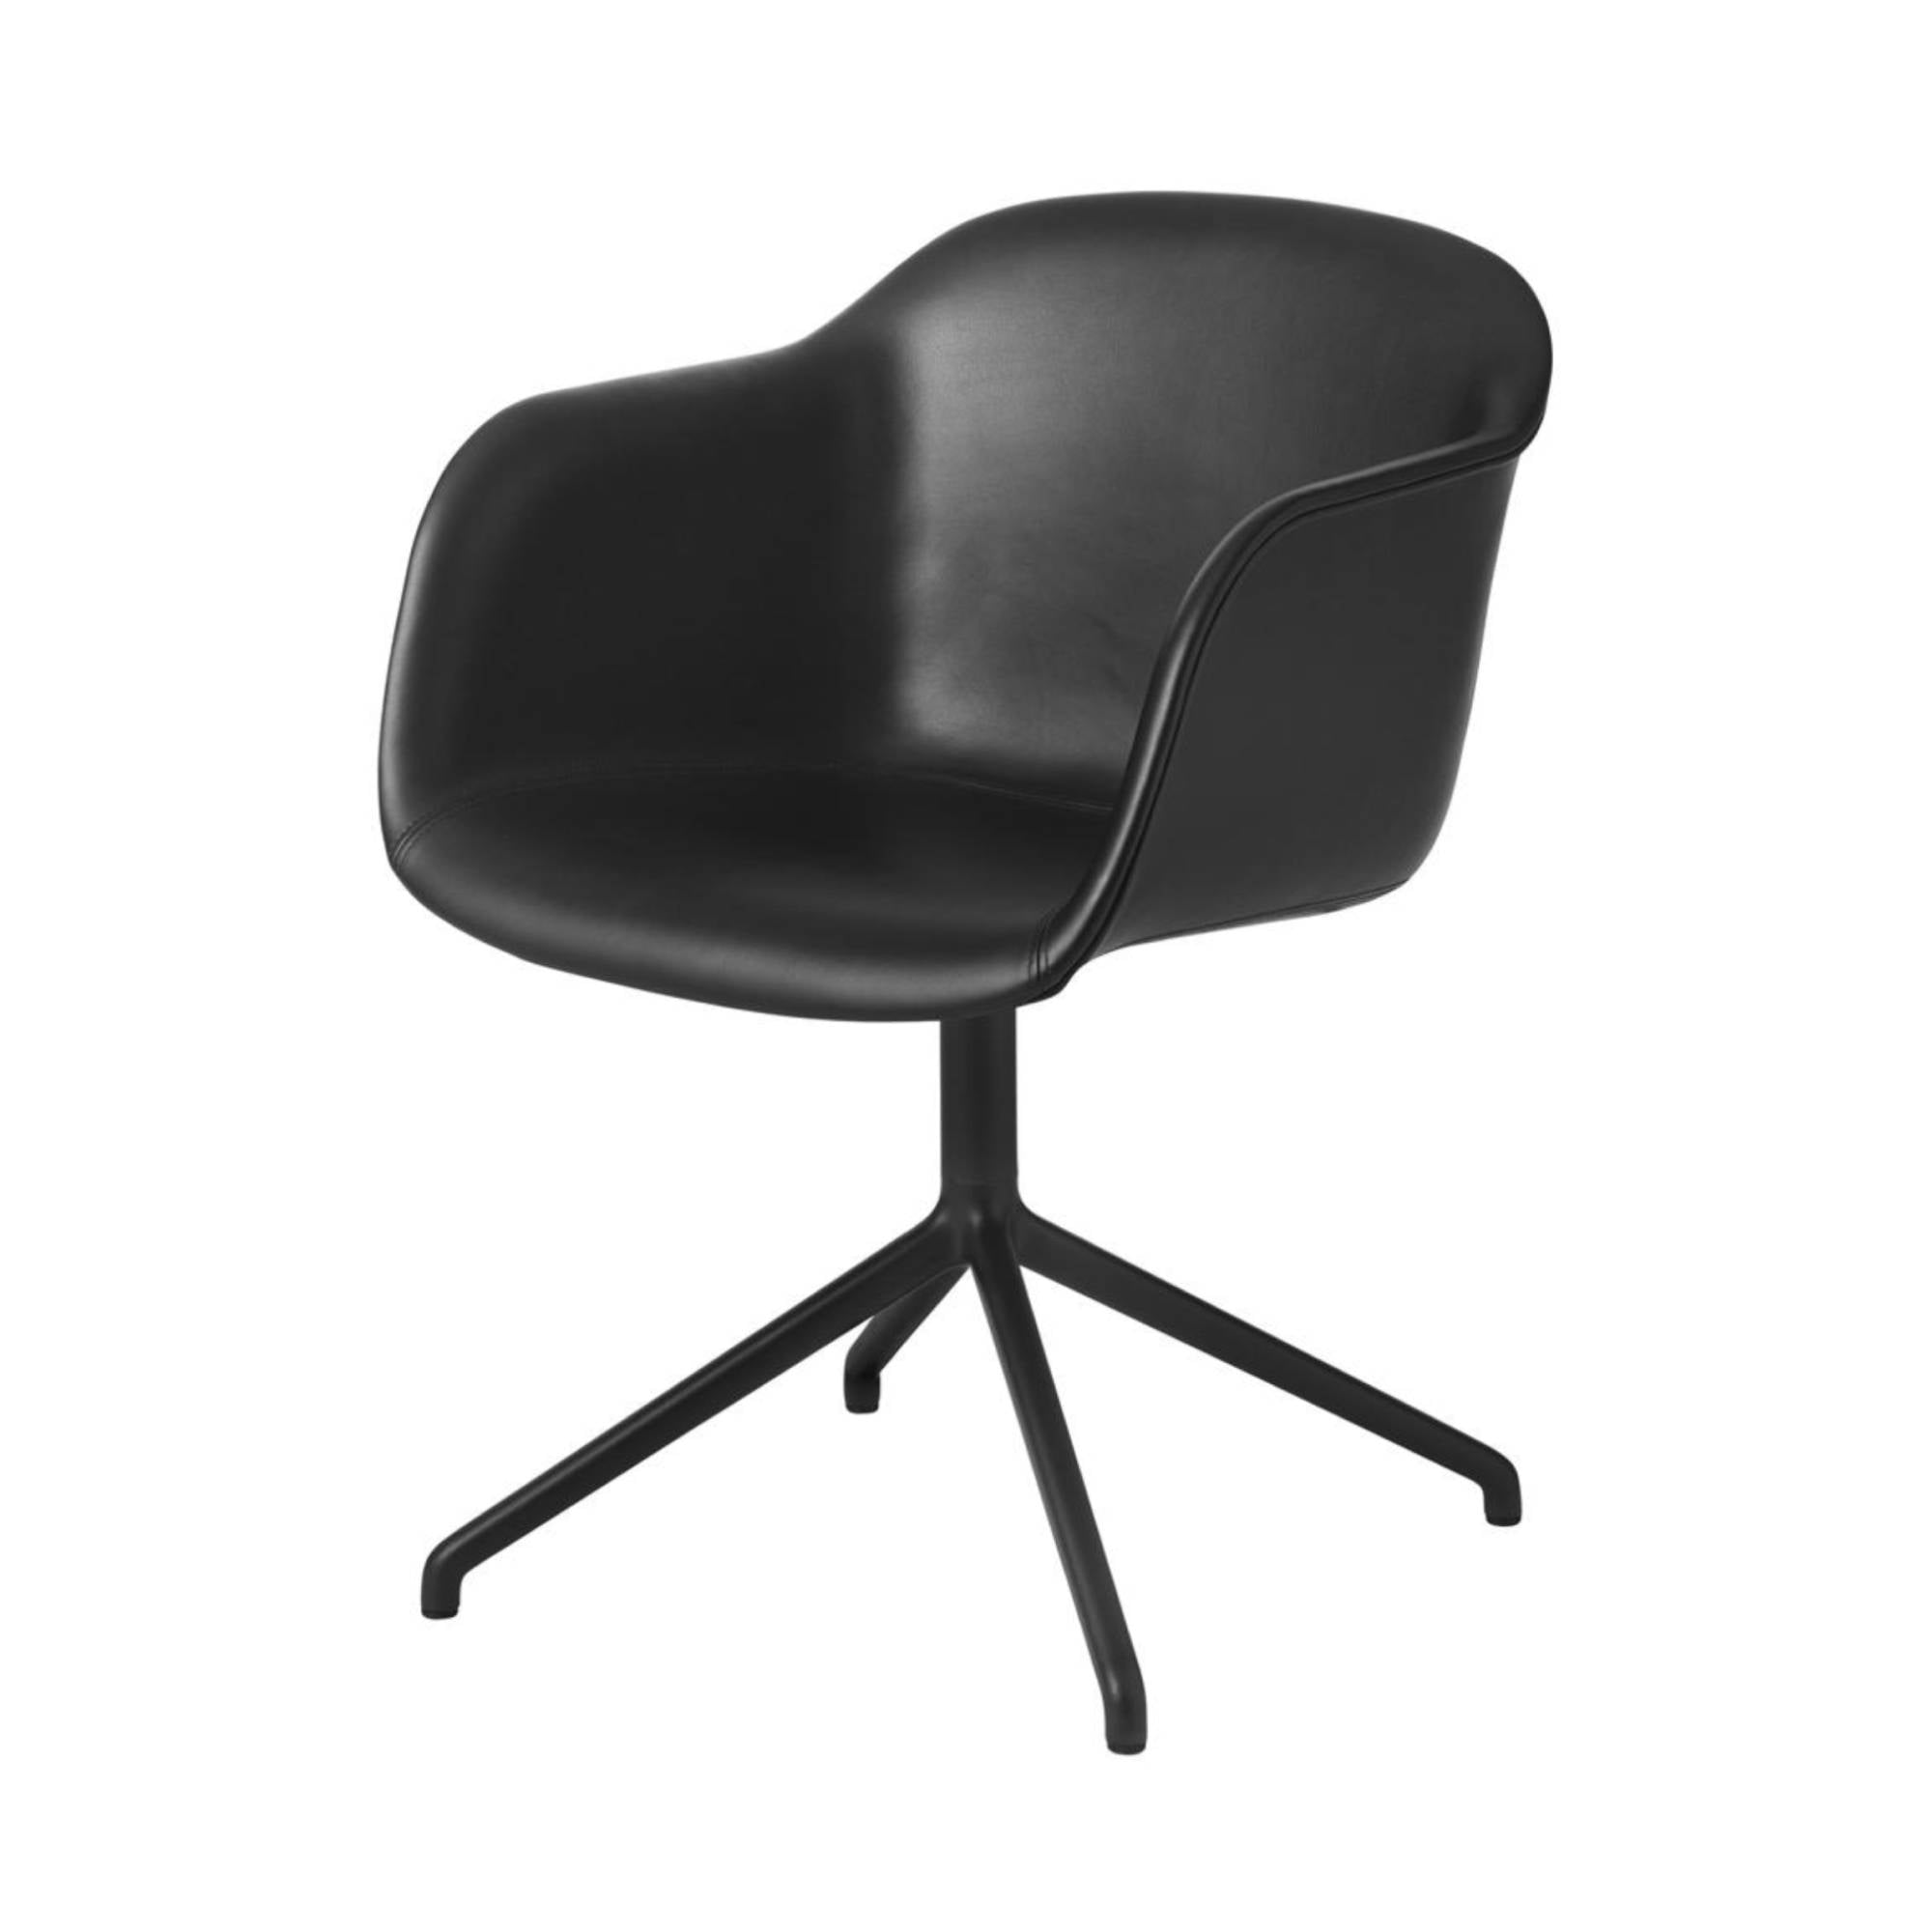 Fiber Armchair: Swivel Base + Upholstered + Black + Stocked: Black Refine Leather